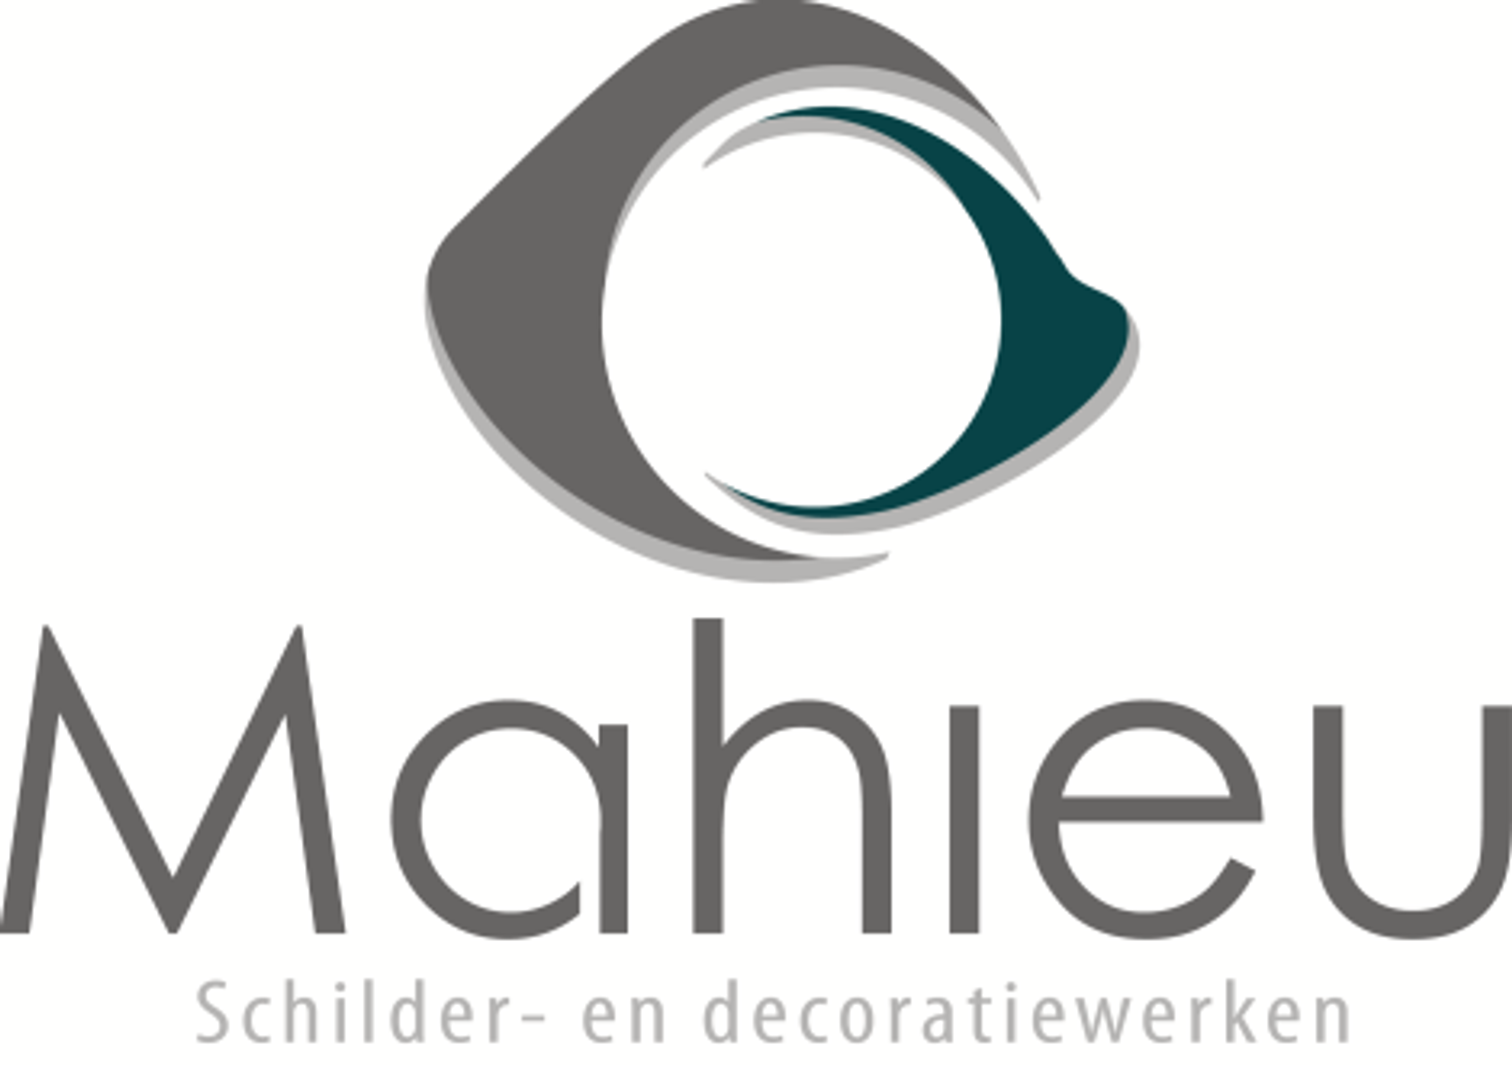 Schilder en decoratiewerken Mahieu bv logo